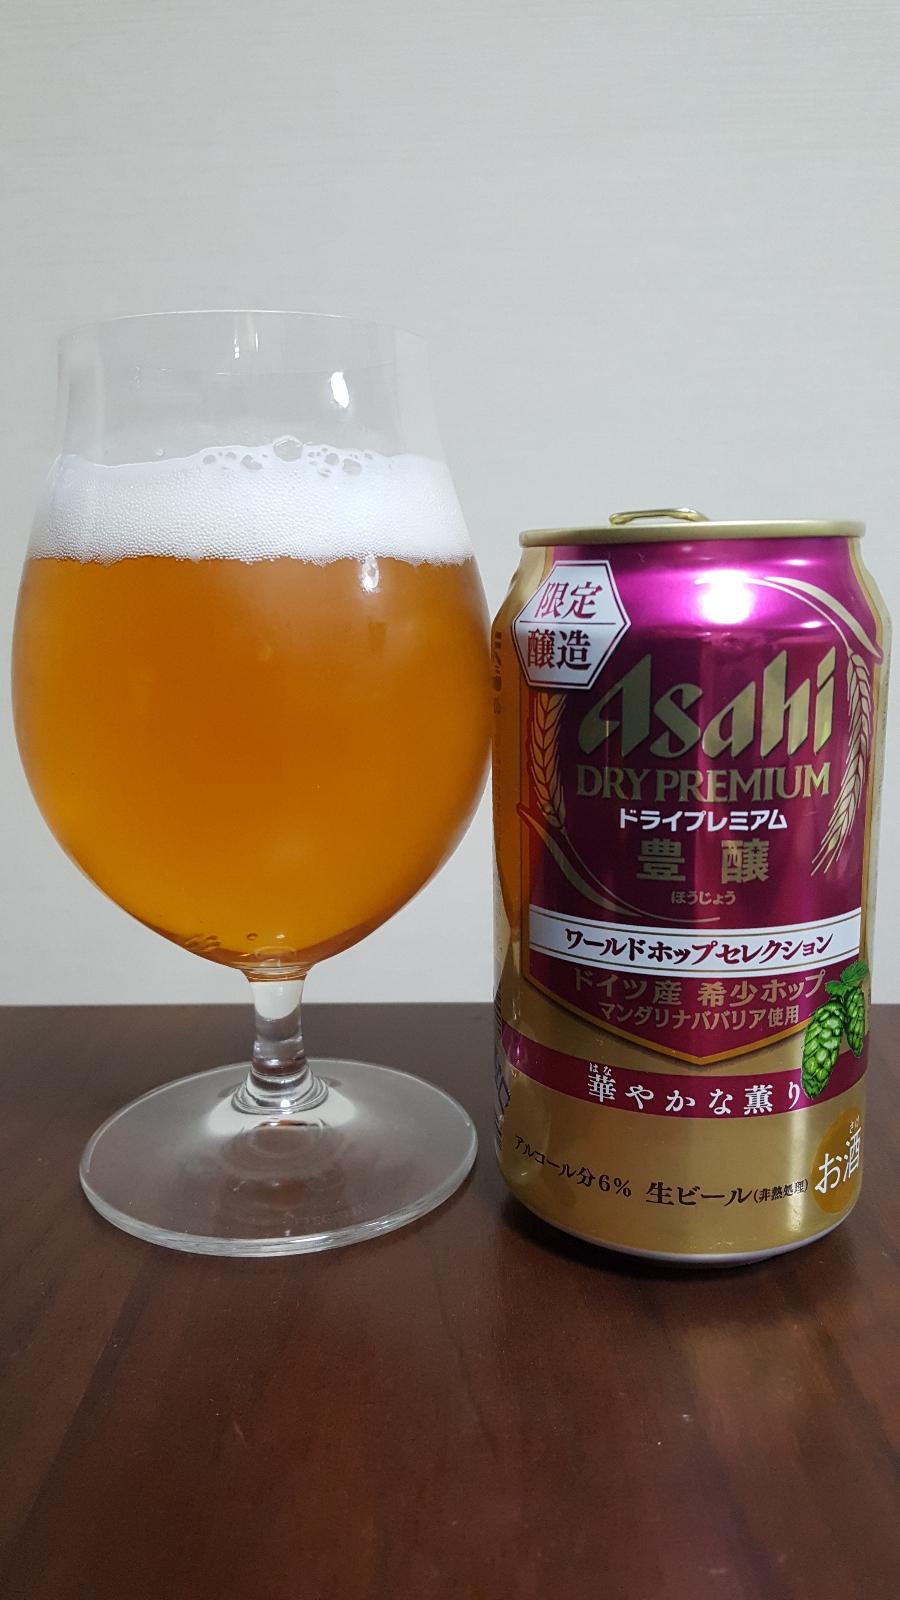 Asahi Dry Premium Houjou World Hop Selection Mandarina Bavaria